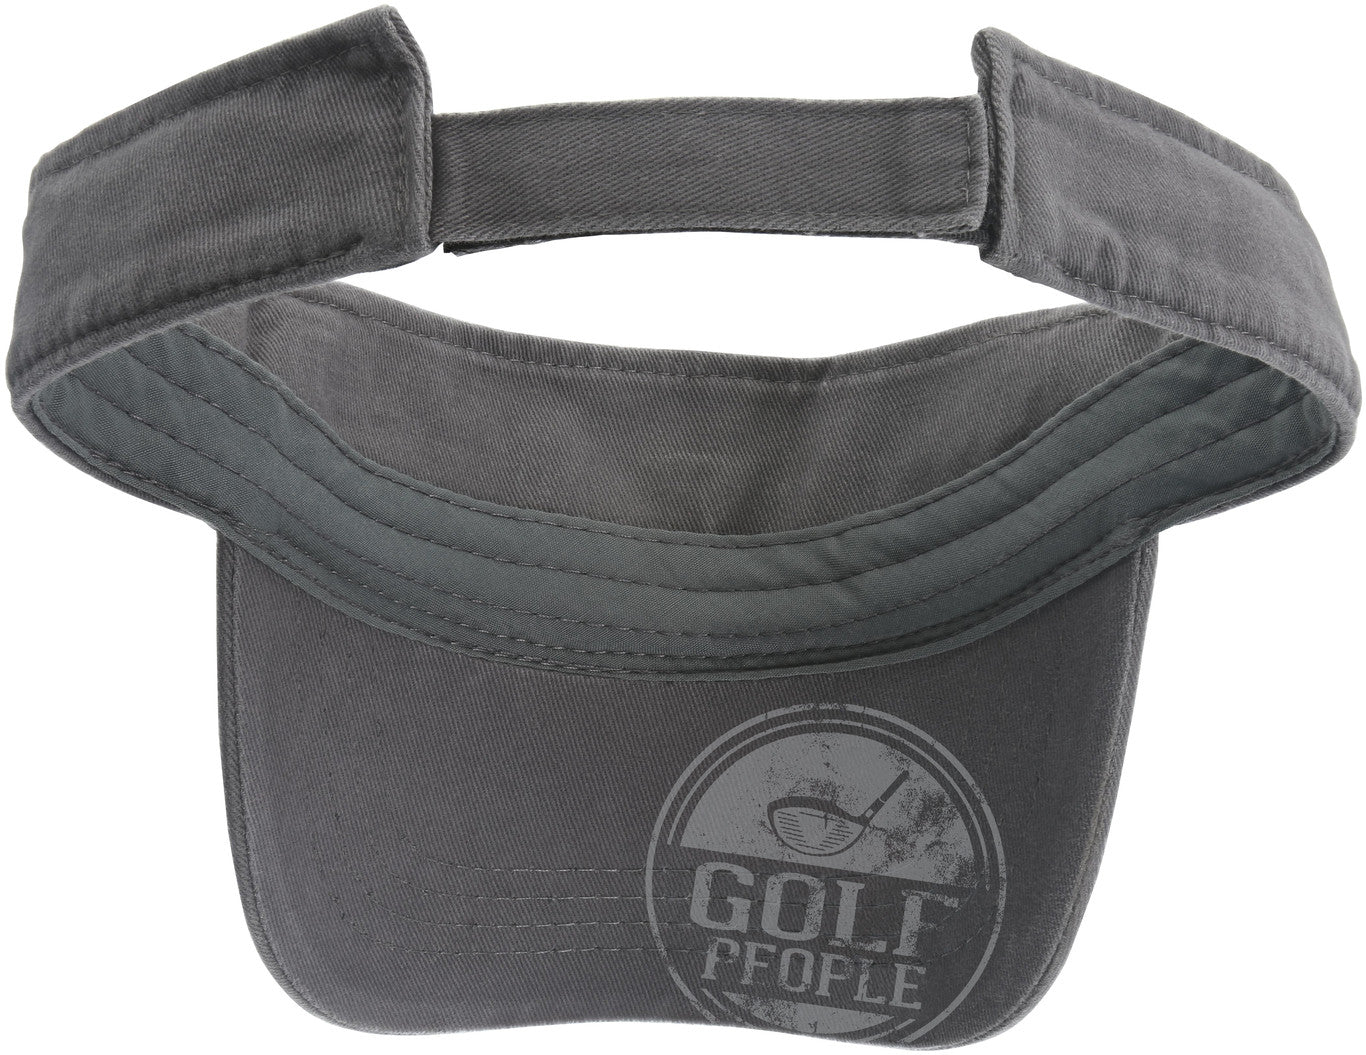 Golf People Unisex Dark Gray Adjustable Visor Hat Visor Hat - Beloved Gift Shop